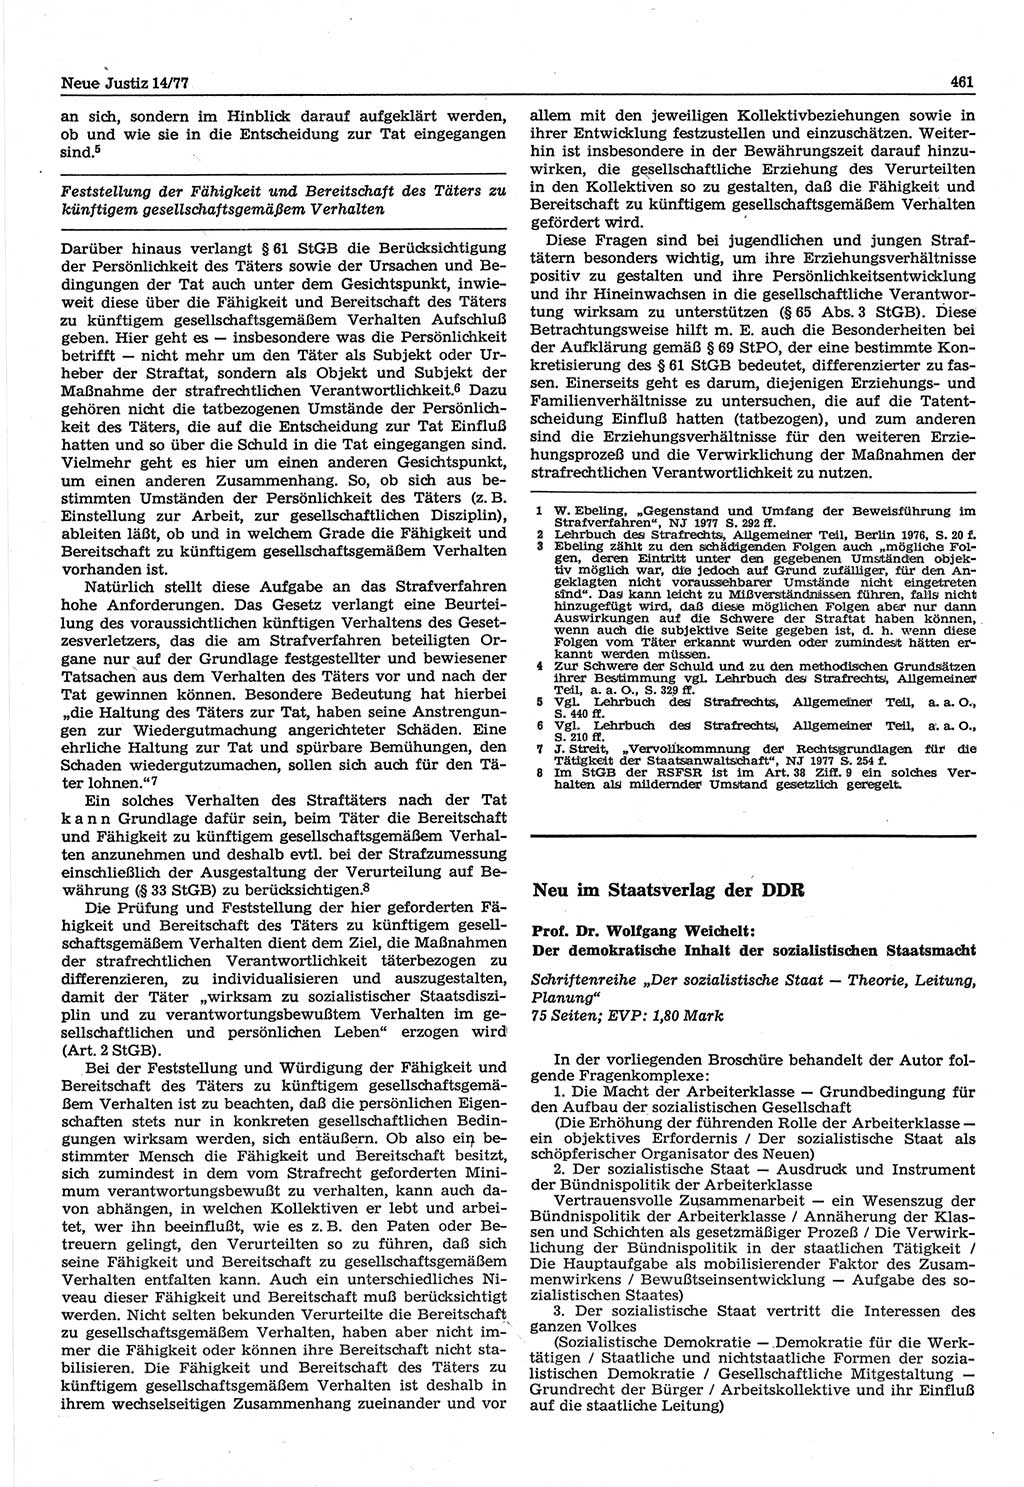 Neue Justiz (NJ), Zeitschrift für Recht und Rechtswissenschaft-Zeitschrift, sozialistisches Recht und Gesetzlichkeit, 31. Jahrgang 1977, Seite 461 (NJ DDR 1977, S. 461)